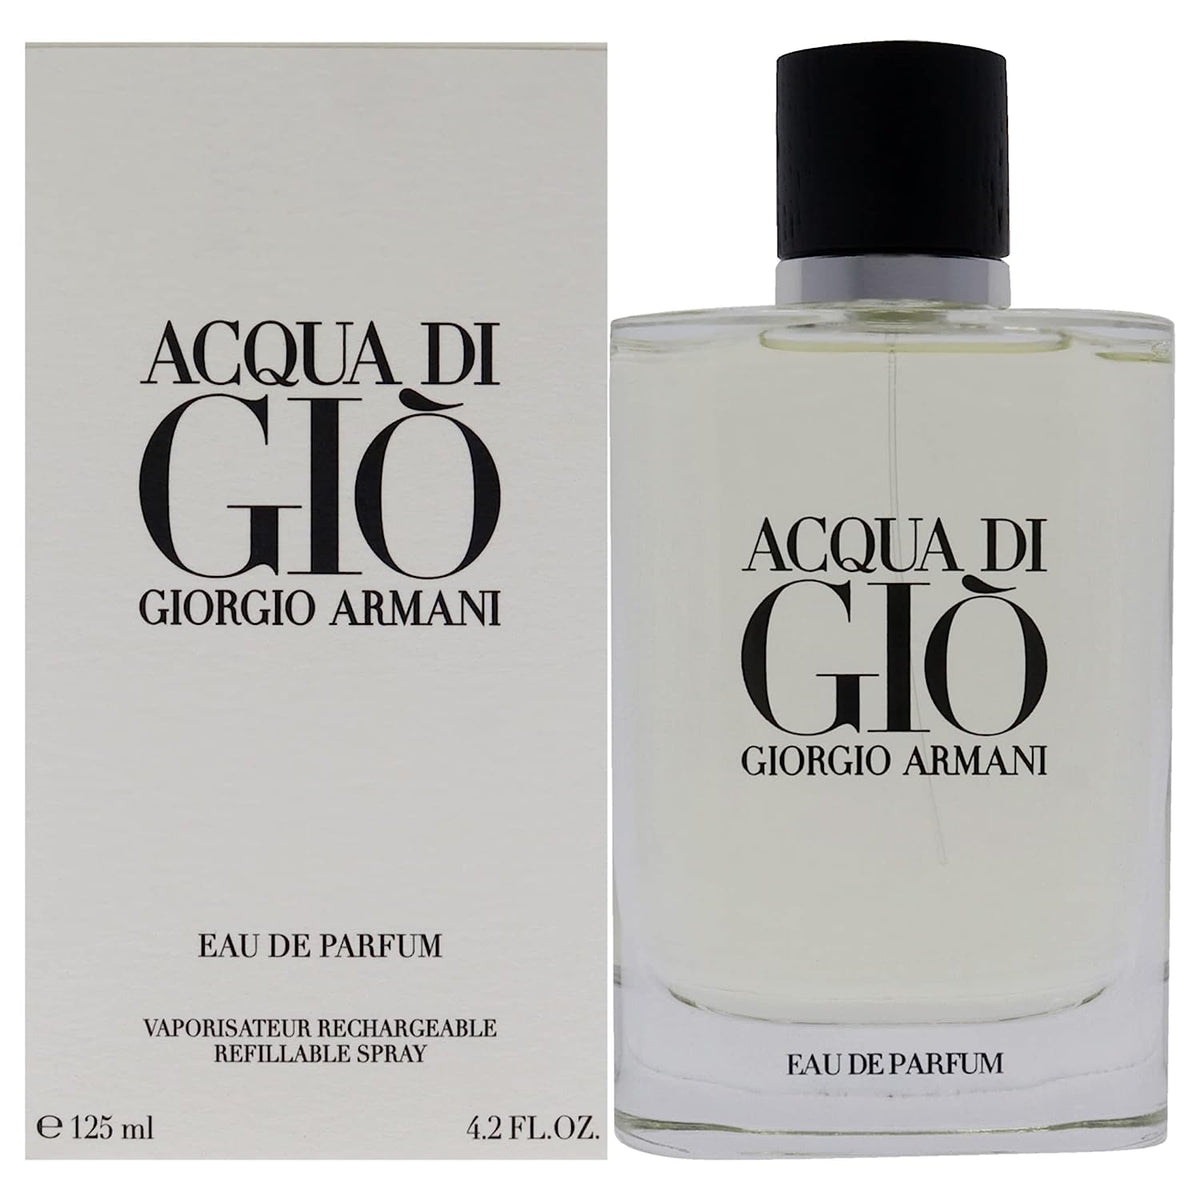 Giorgio Armani Acqua Di Gio Eau De Parfum (125 ml) Beautiful